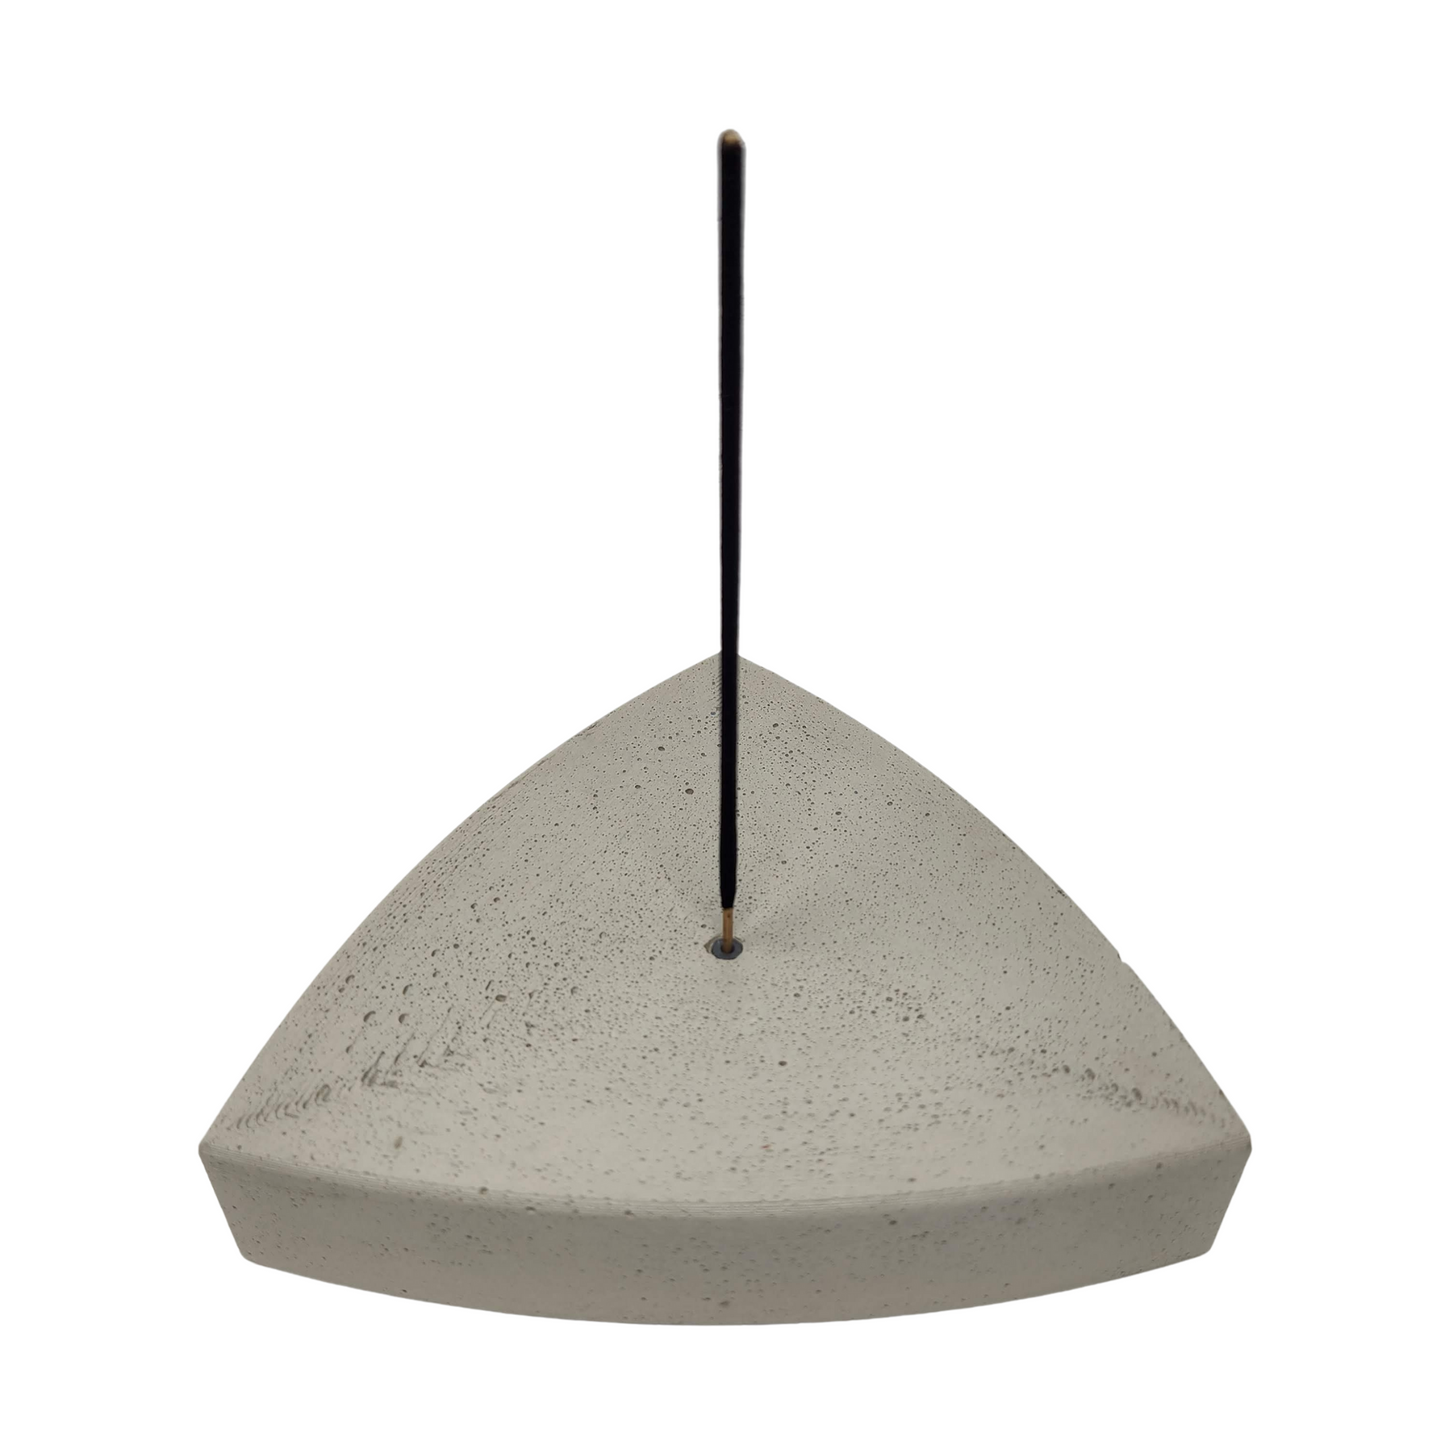 5"x1.25" Triangle Incense Holder | Concrete